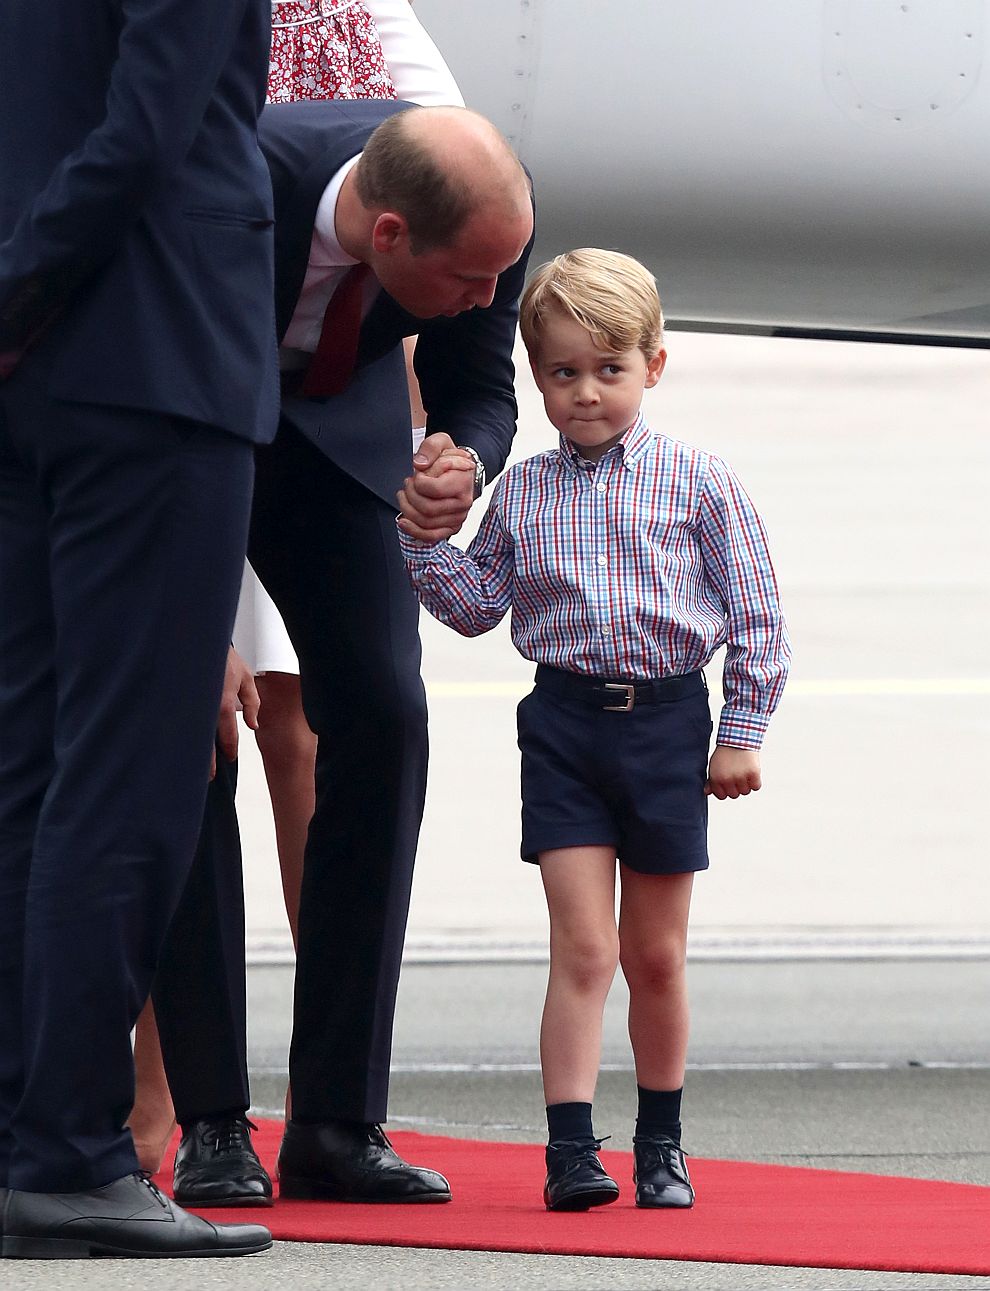 Херцогът и херцогинята на Кеймбридж пристигнаха във Варшава заедно със своите деца - 3-годишният принц Джордж и 2-годишната принцеса Шарлот.